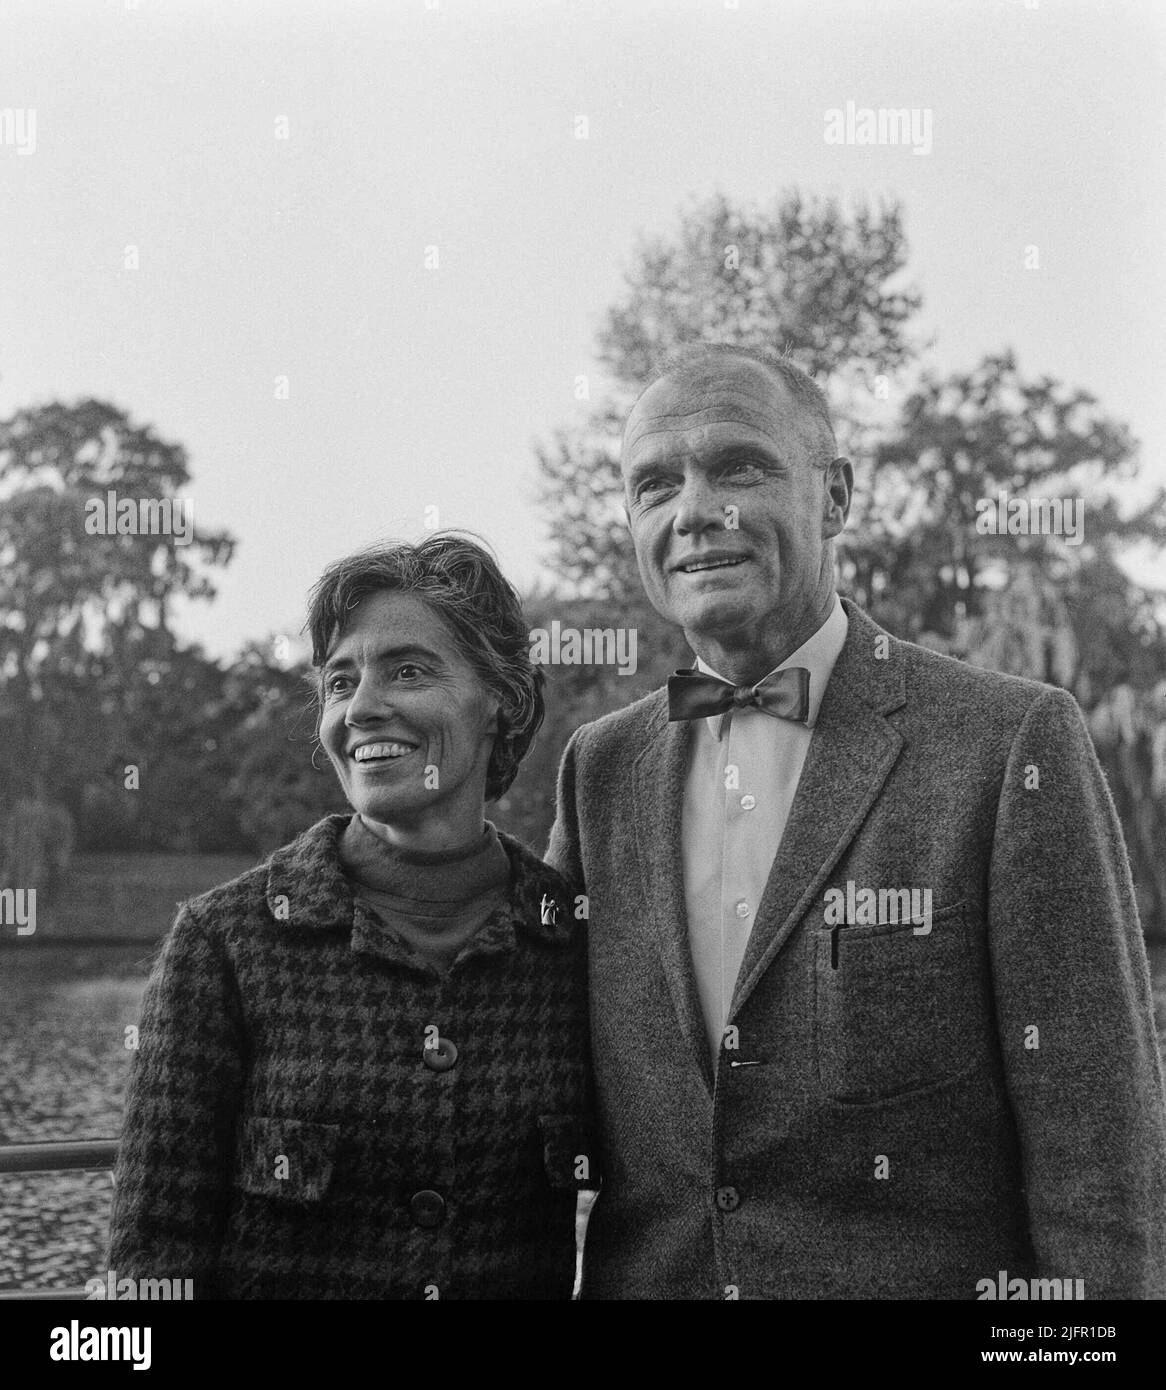 Der amerikanische Astronaut John Glenn (rechts) und seine Frau Annie Glenn posieren für ein Foto am Samstag, den 9. Oktober 1965, an einem unbekannten Ort in den Niederlanden. John Glenn, ein angesehener US Marine Corps-Kampfflugzeug und einer der ursprünglichen Mercury-Astronauten des National Aeronautics and Space Administration, machte 1957 den ersten überschalligen transkontinentalen Flug durch die Vereinigten Staaten und wurde 1962 der erste Amerikaner, der die Erde umkreiste. (APEX MediaWire Foto von Jack de Nijs/Algemeen Nederlandsch Fotobüro) Stockfoto